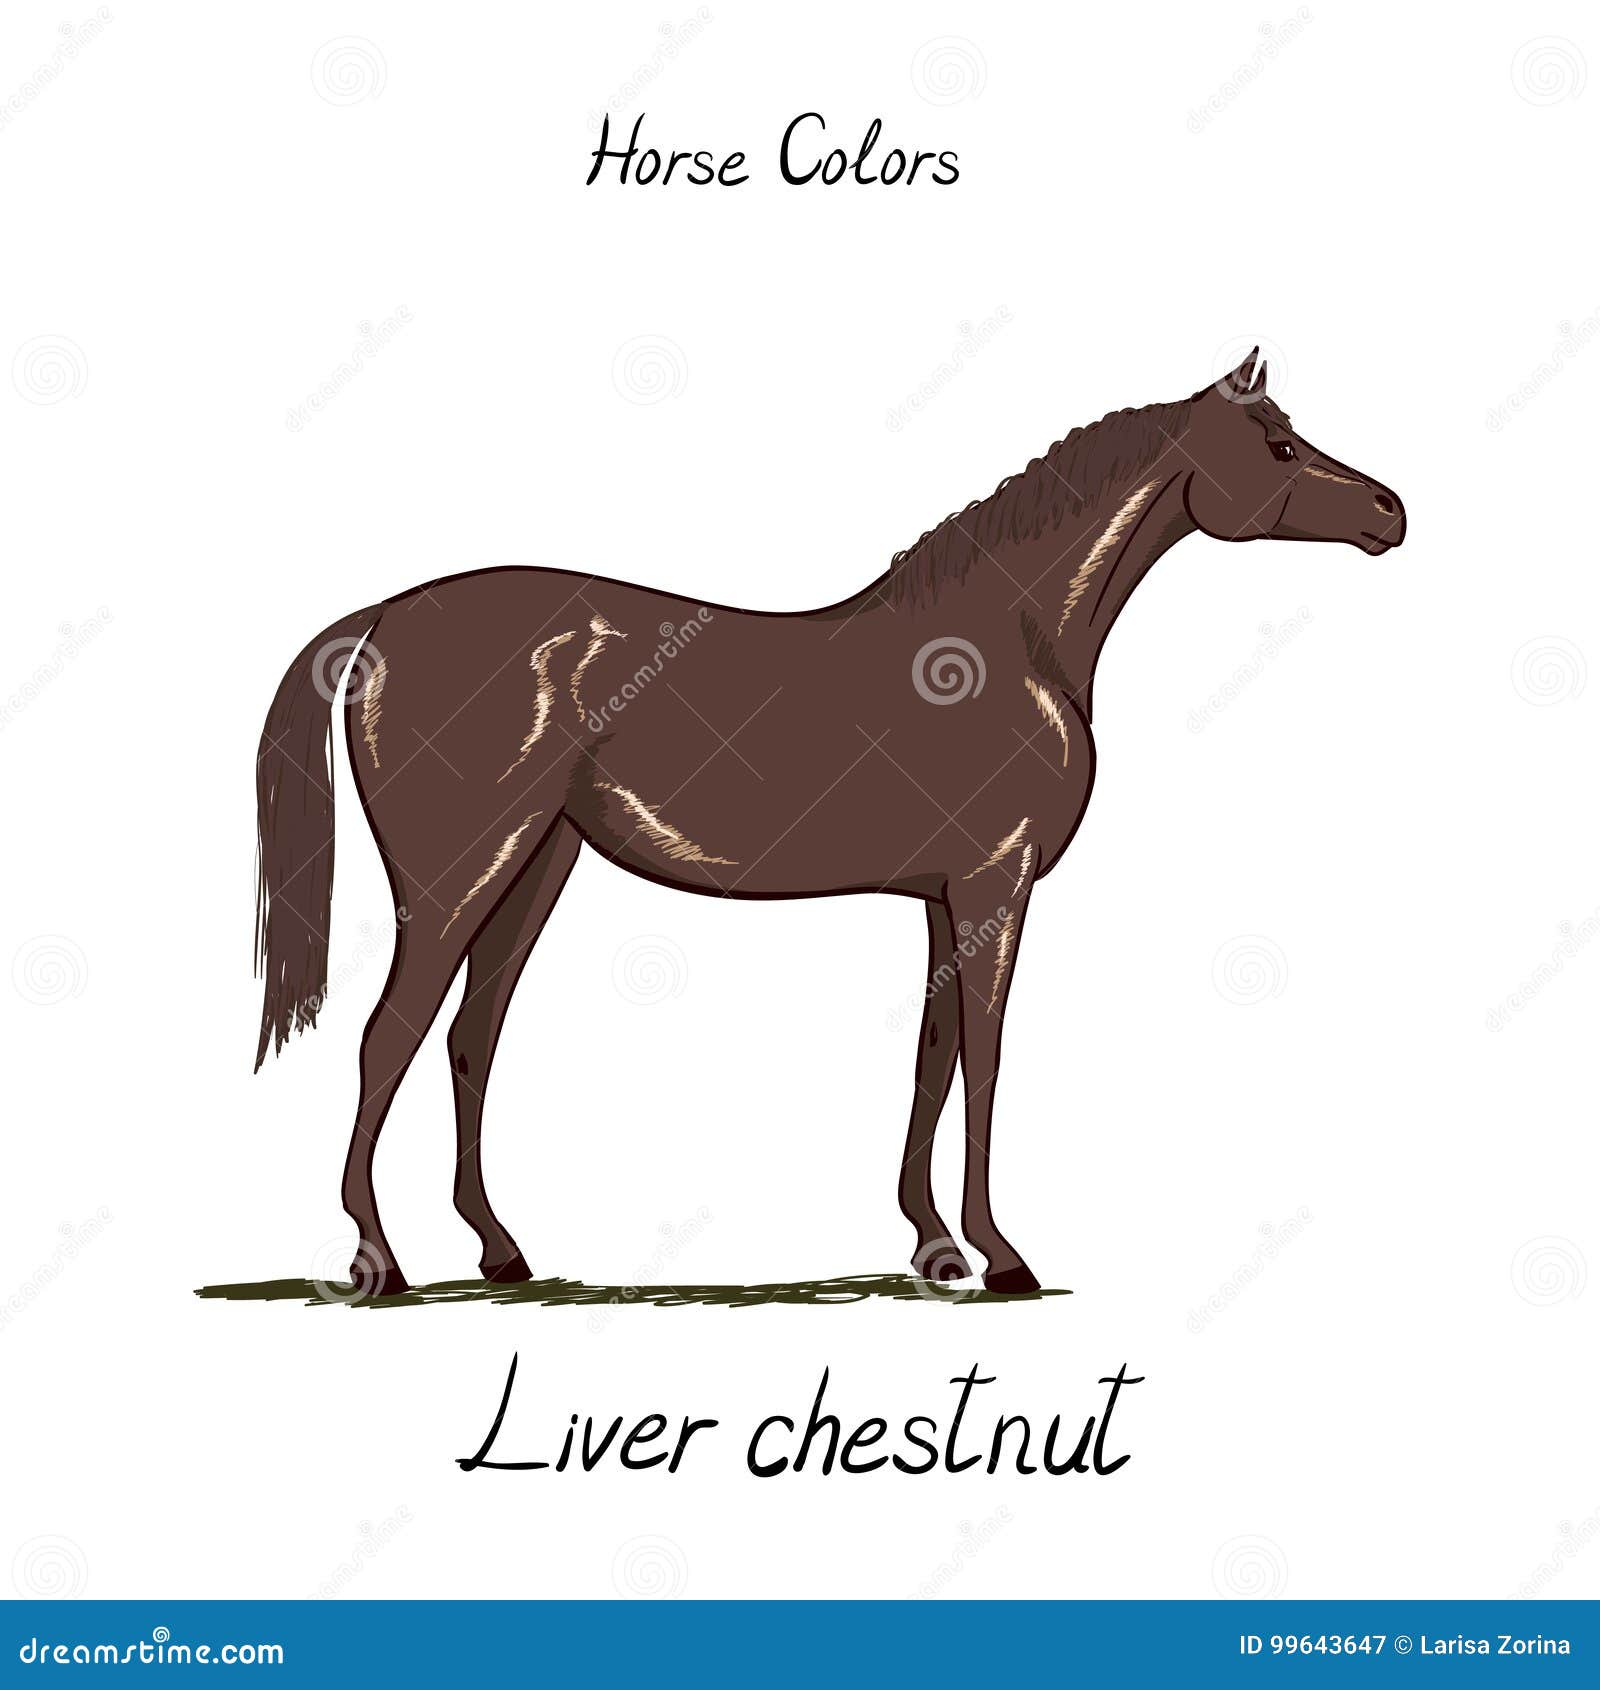 Horse Tack Color Chart